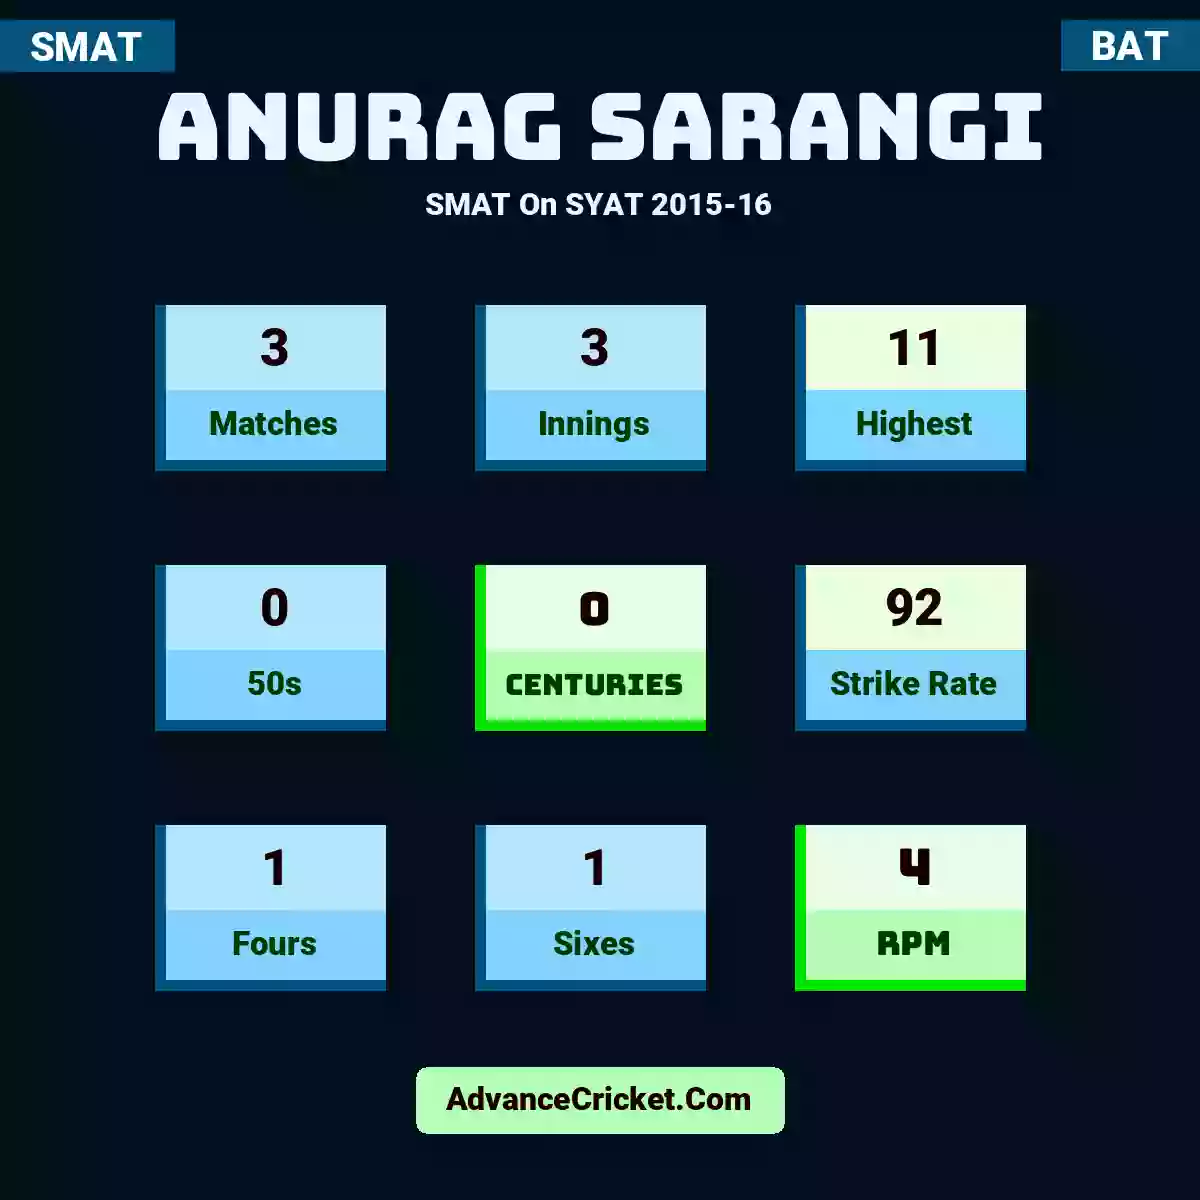 Anurag Sarangi SMAT  On SYAT 2015-16, Anurag Sarangi played 3 matches, scored 11 runs as highest, 0 half-centuries, and 0 centuries, with a strike rate of 92. A.Sarangi hit 1 fours and 1 sixes, with an RPM of 4.